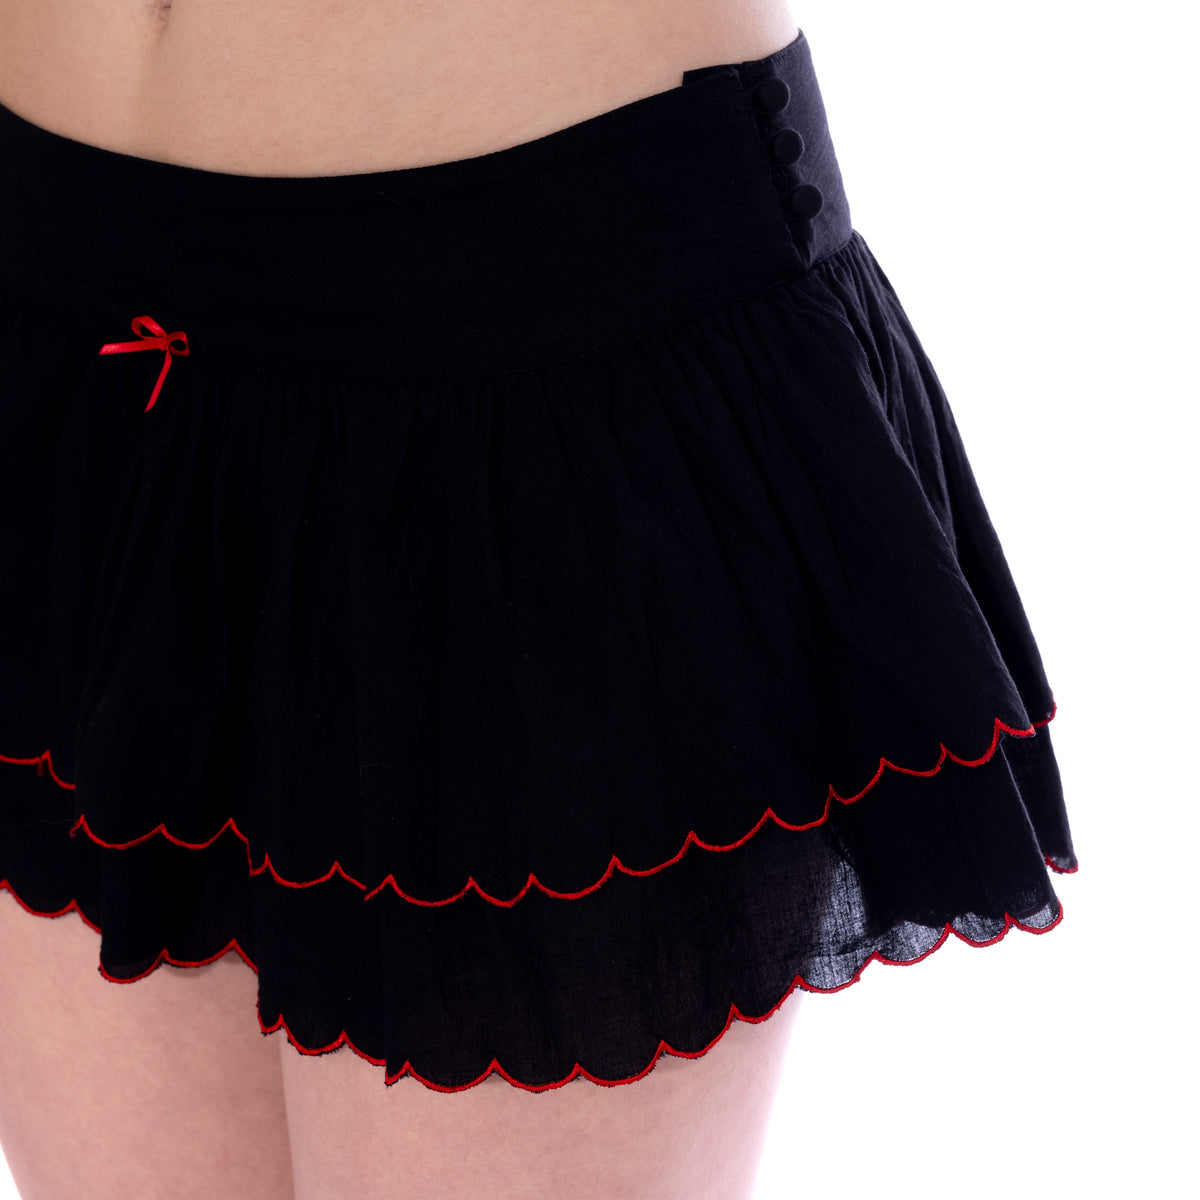 Hilarie skirt